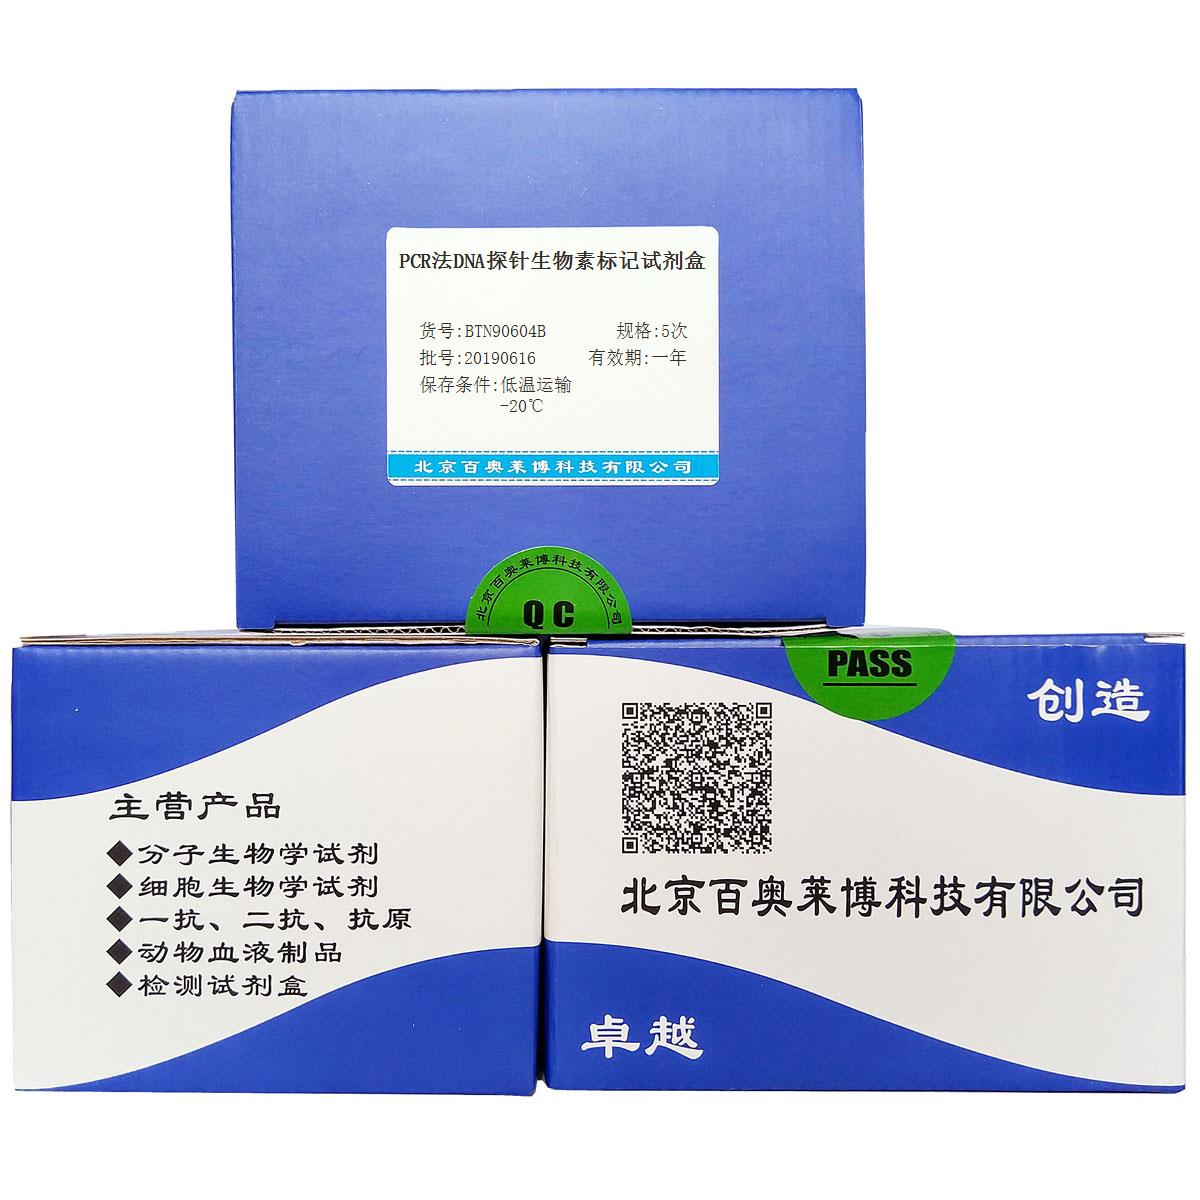 PCR法DNA探针生物素标记试剂盒价格